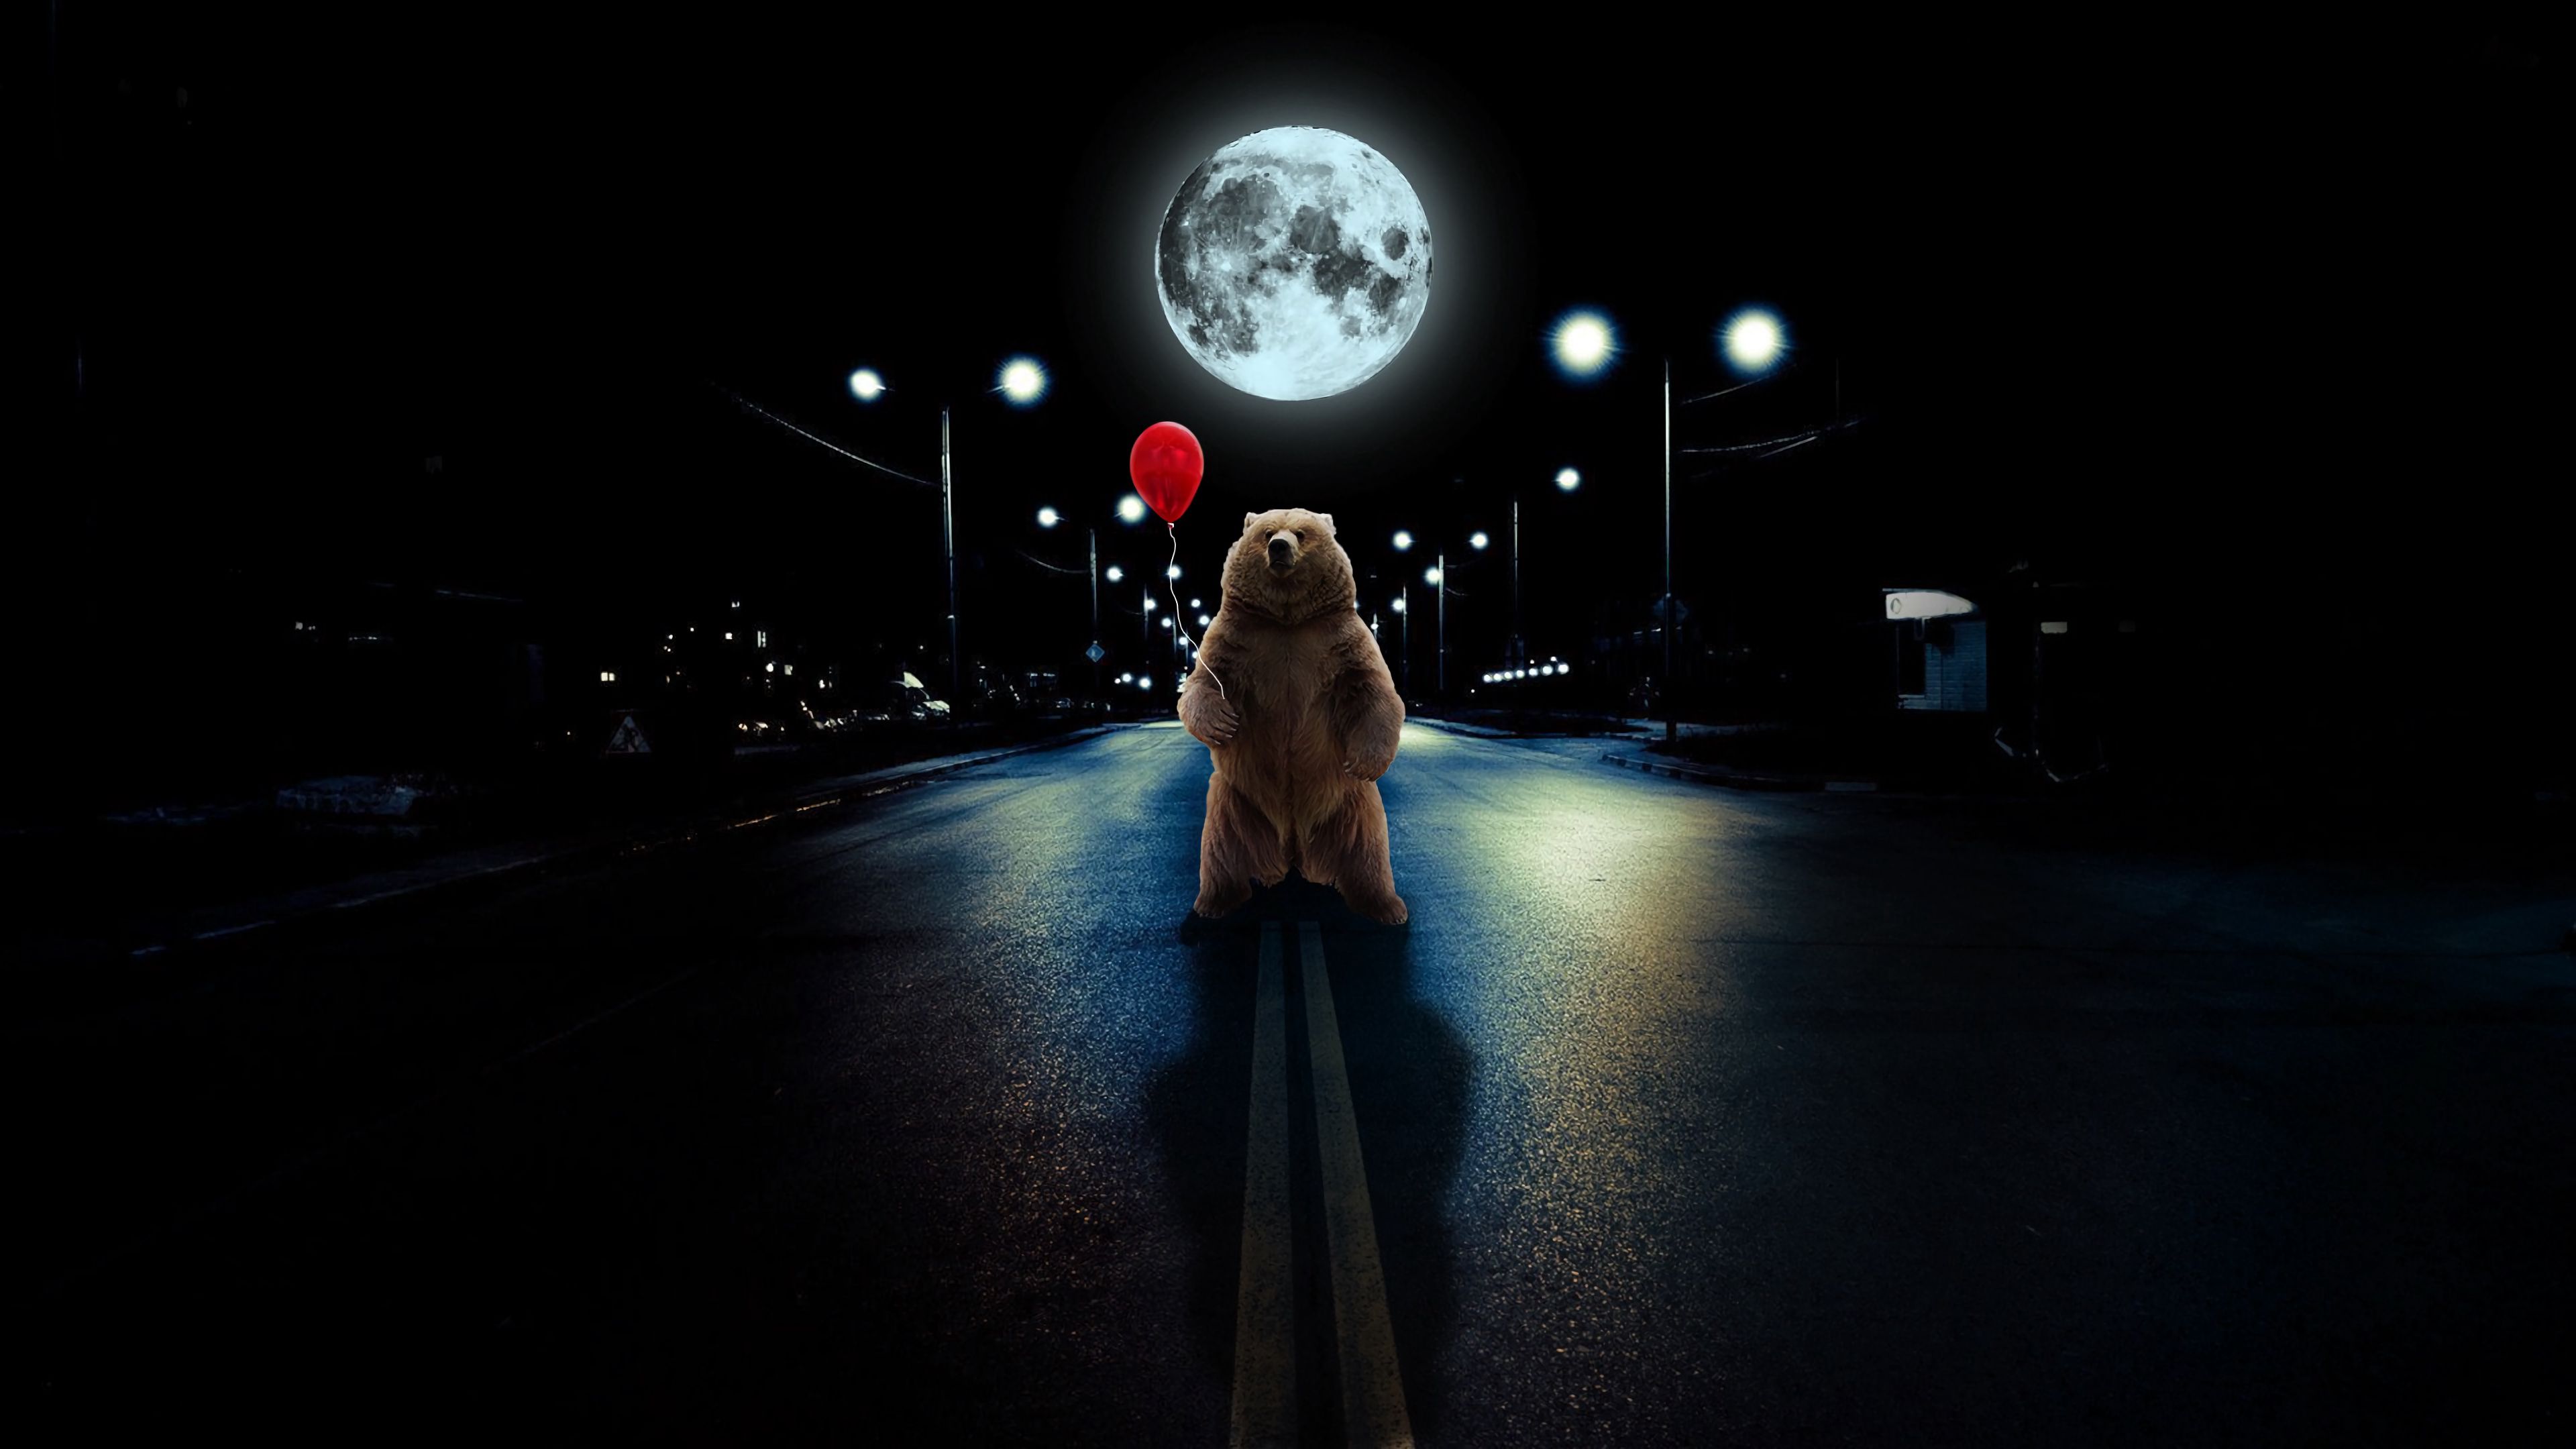 photoshop, bear, full moon, art, road, balloon